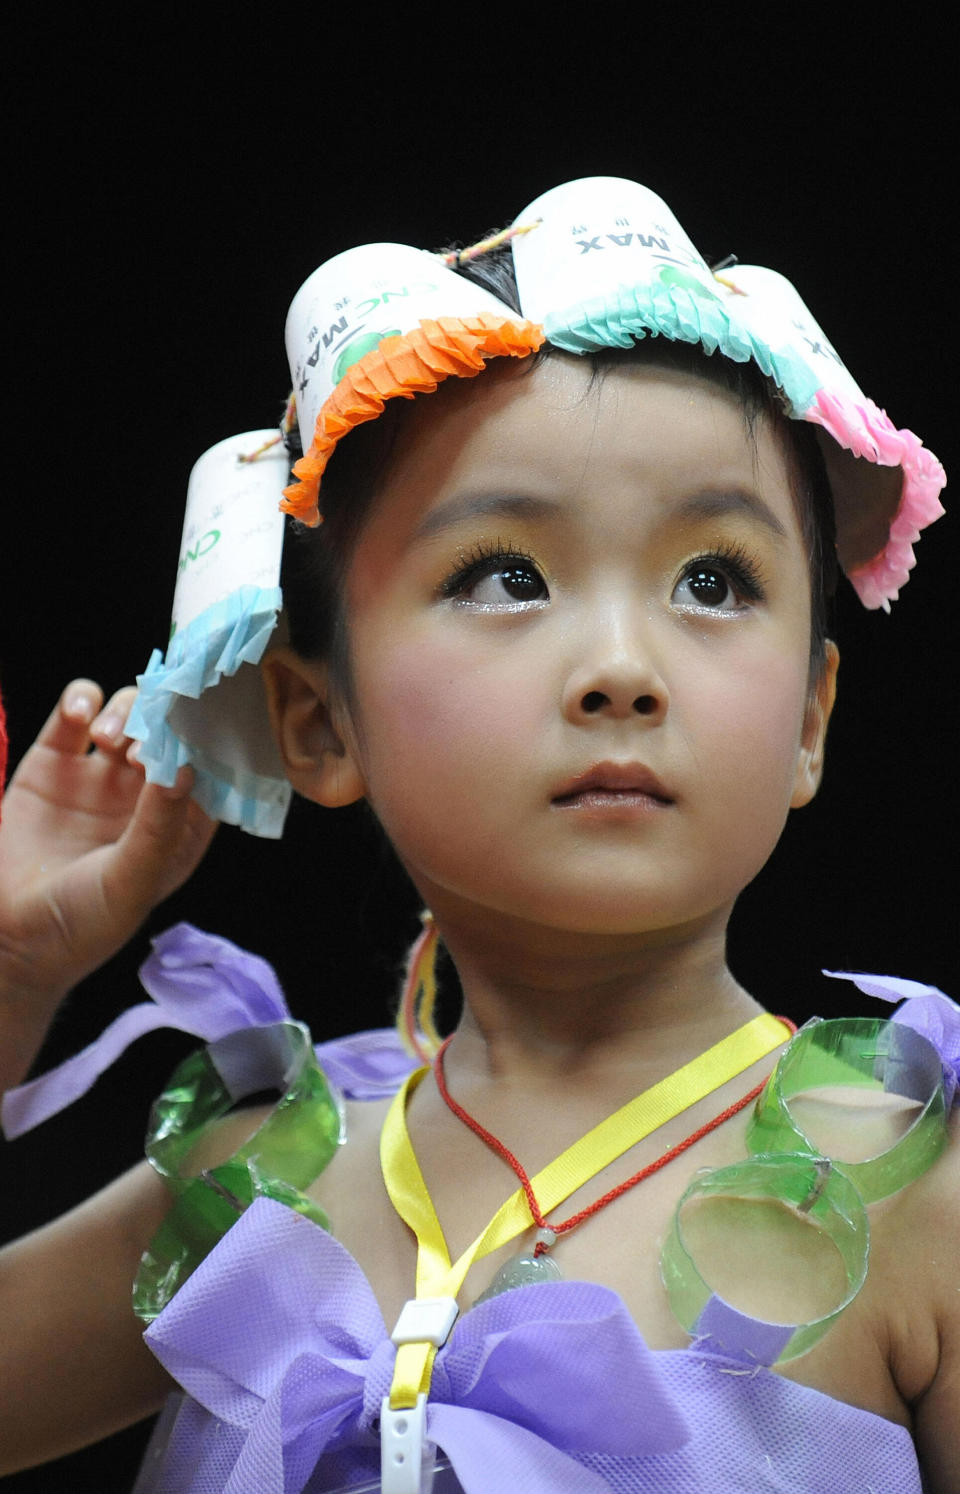 Una joven china participa en un concurso de belleza y modelado para niños en Hefei, en la provincia de Anhui, en el este de China, el 27 de julio de 2009. Los concursos de belleza se consideraron una manifestación de decadencia occidental, pero se han convertido en un gran negocio en la China gobernada por los comunistas. Foto: AFP / Getty Images